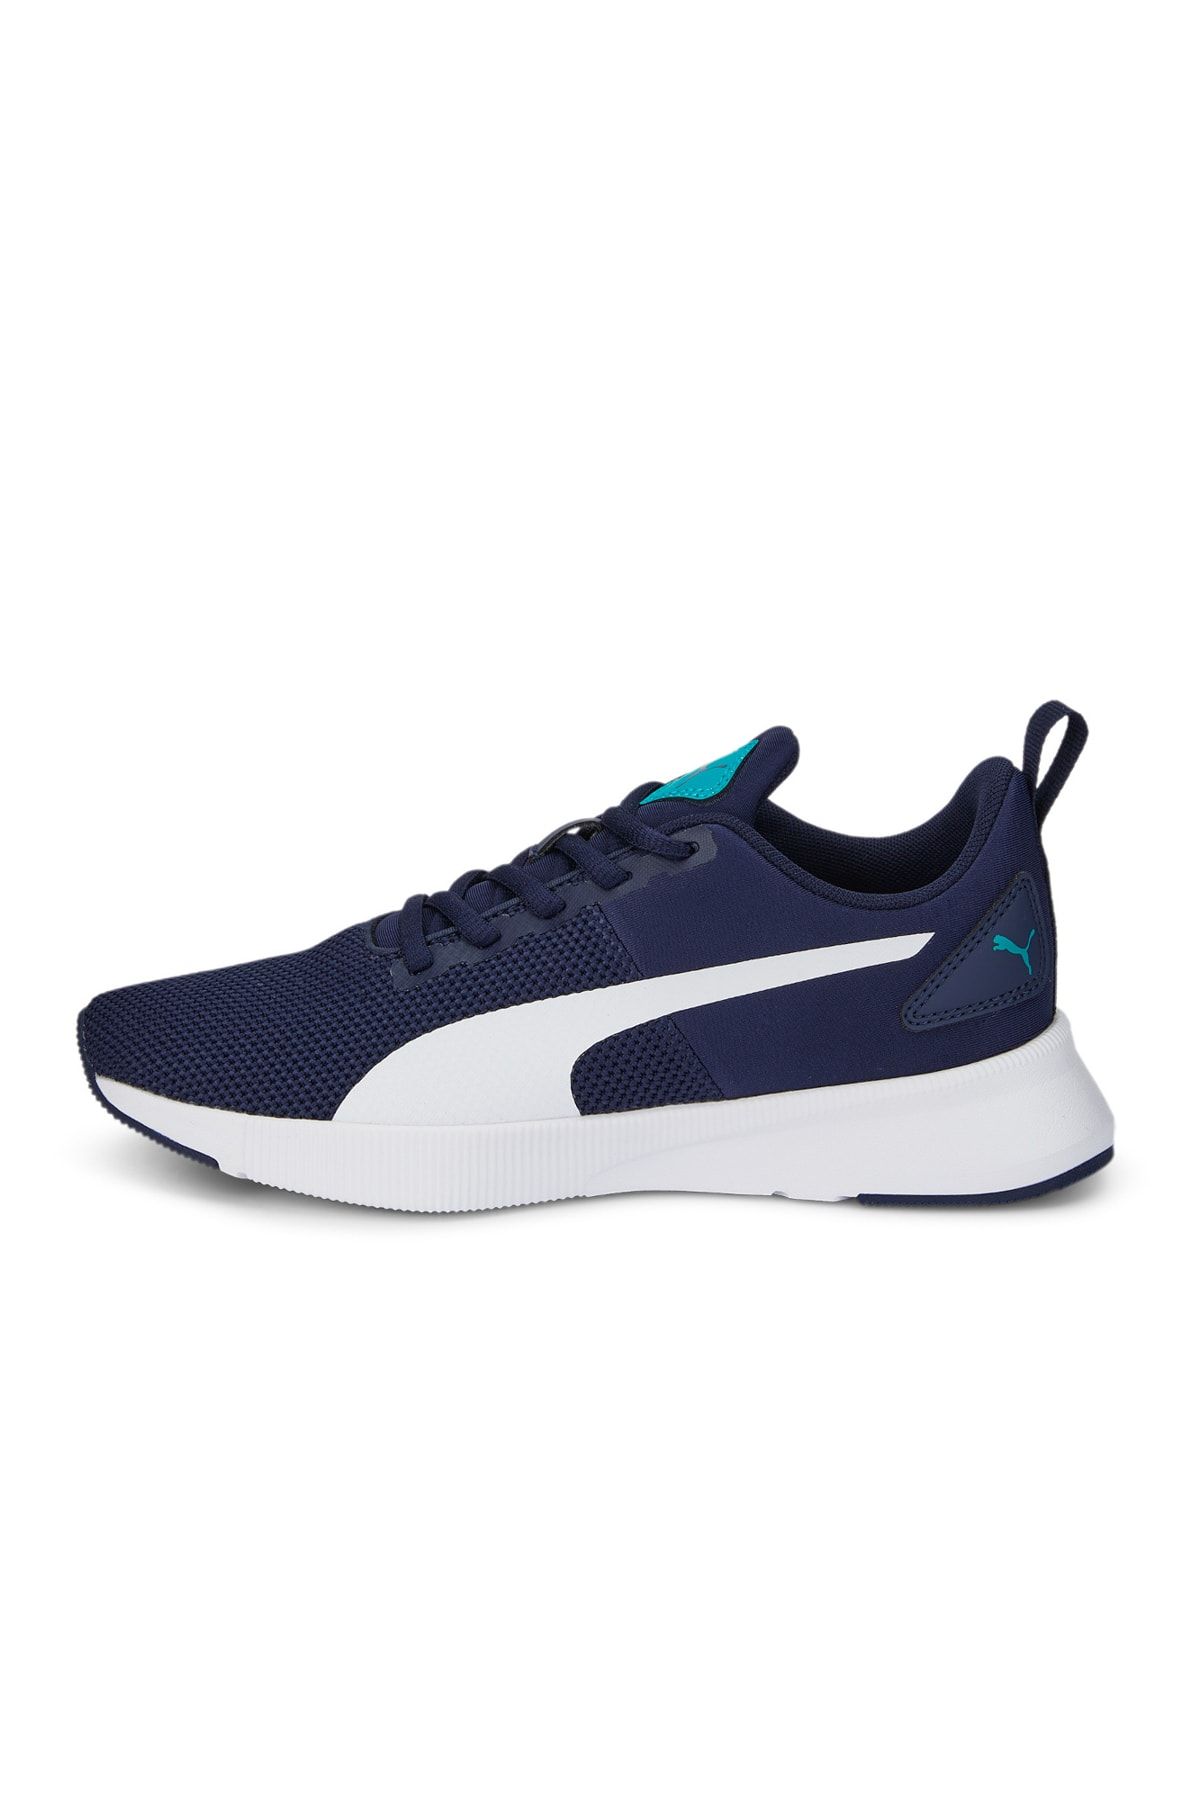 Puma Sneakers Dark blue - Flat - Trendyol